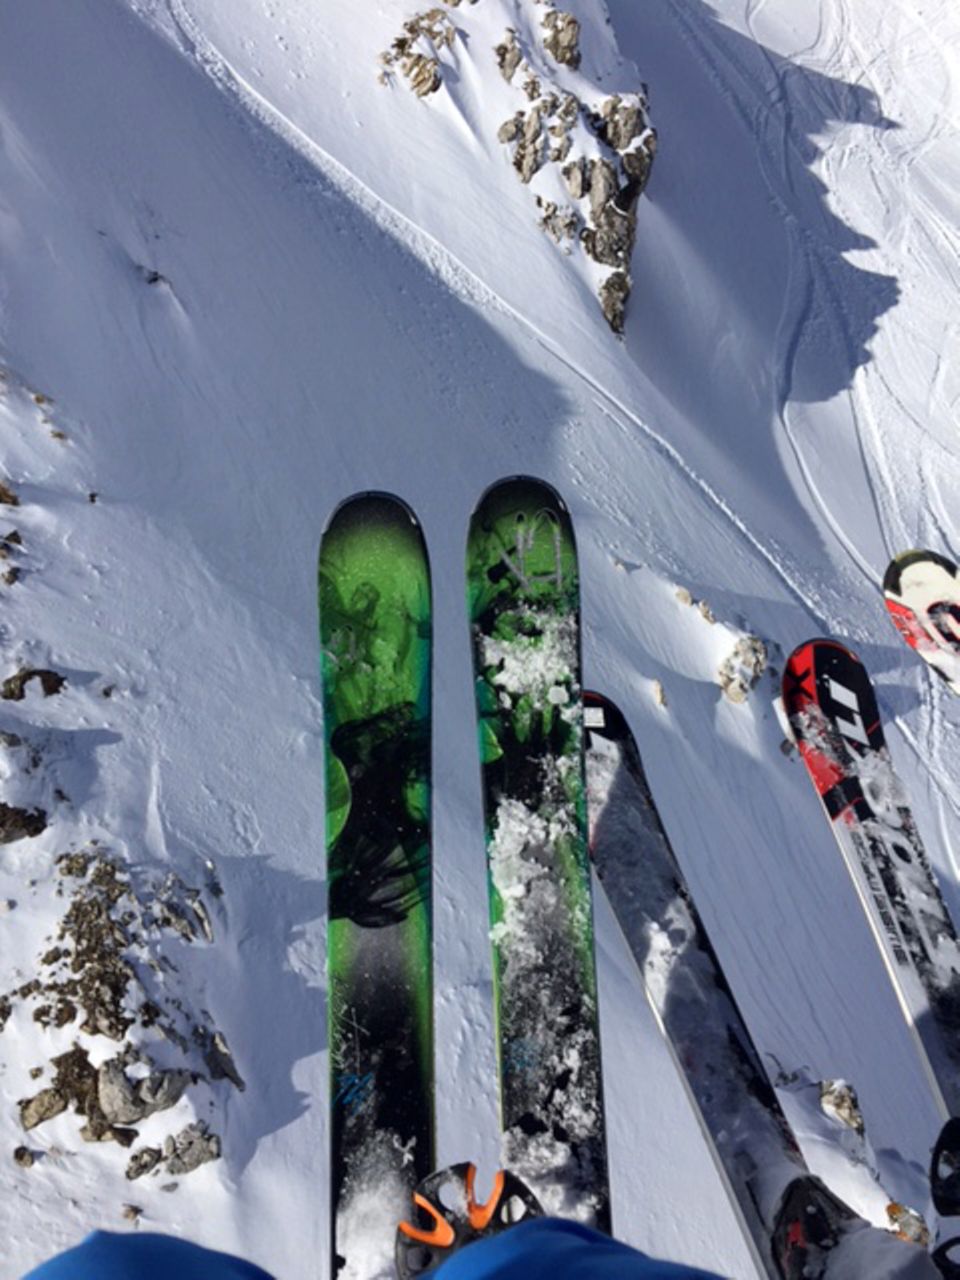 Schnee, Ski, gute Freunde - was will man mehr!?